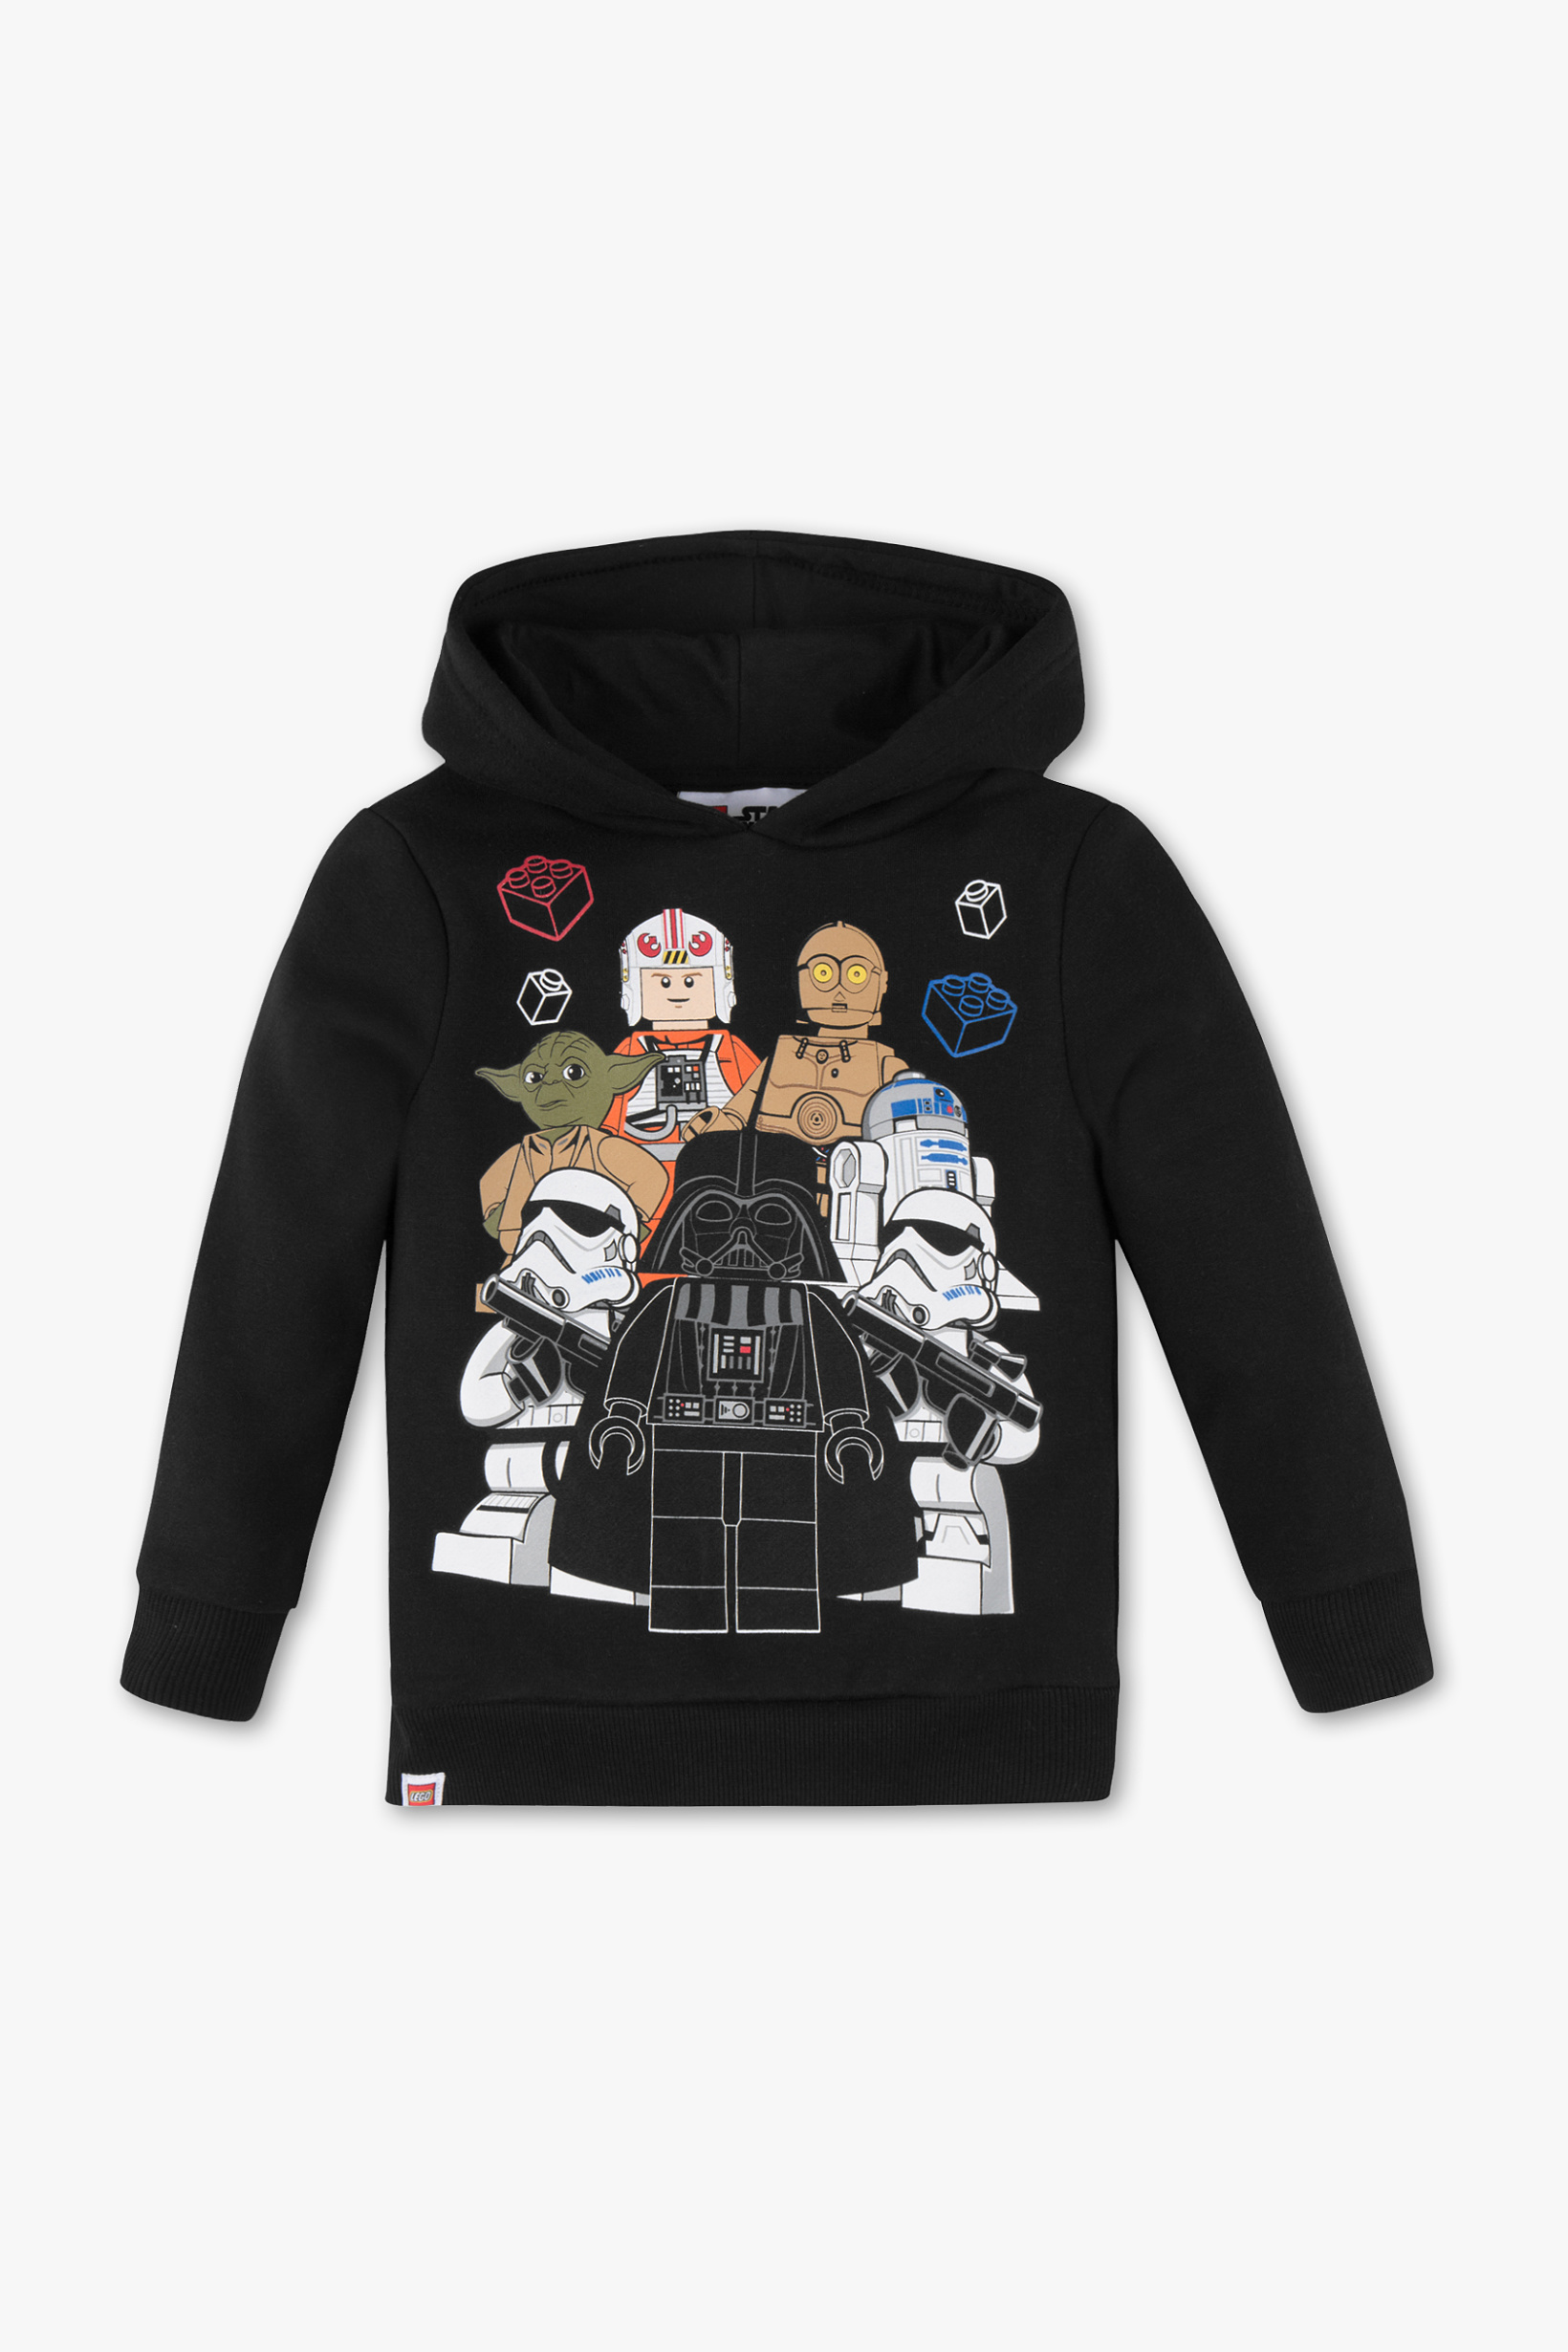 Lego Star Wars hoodie